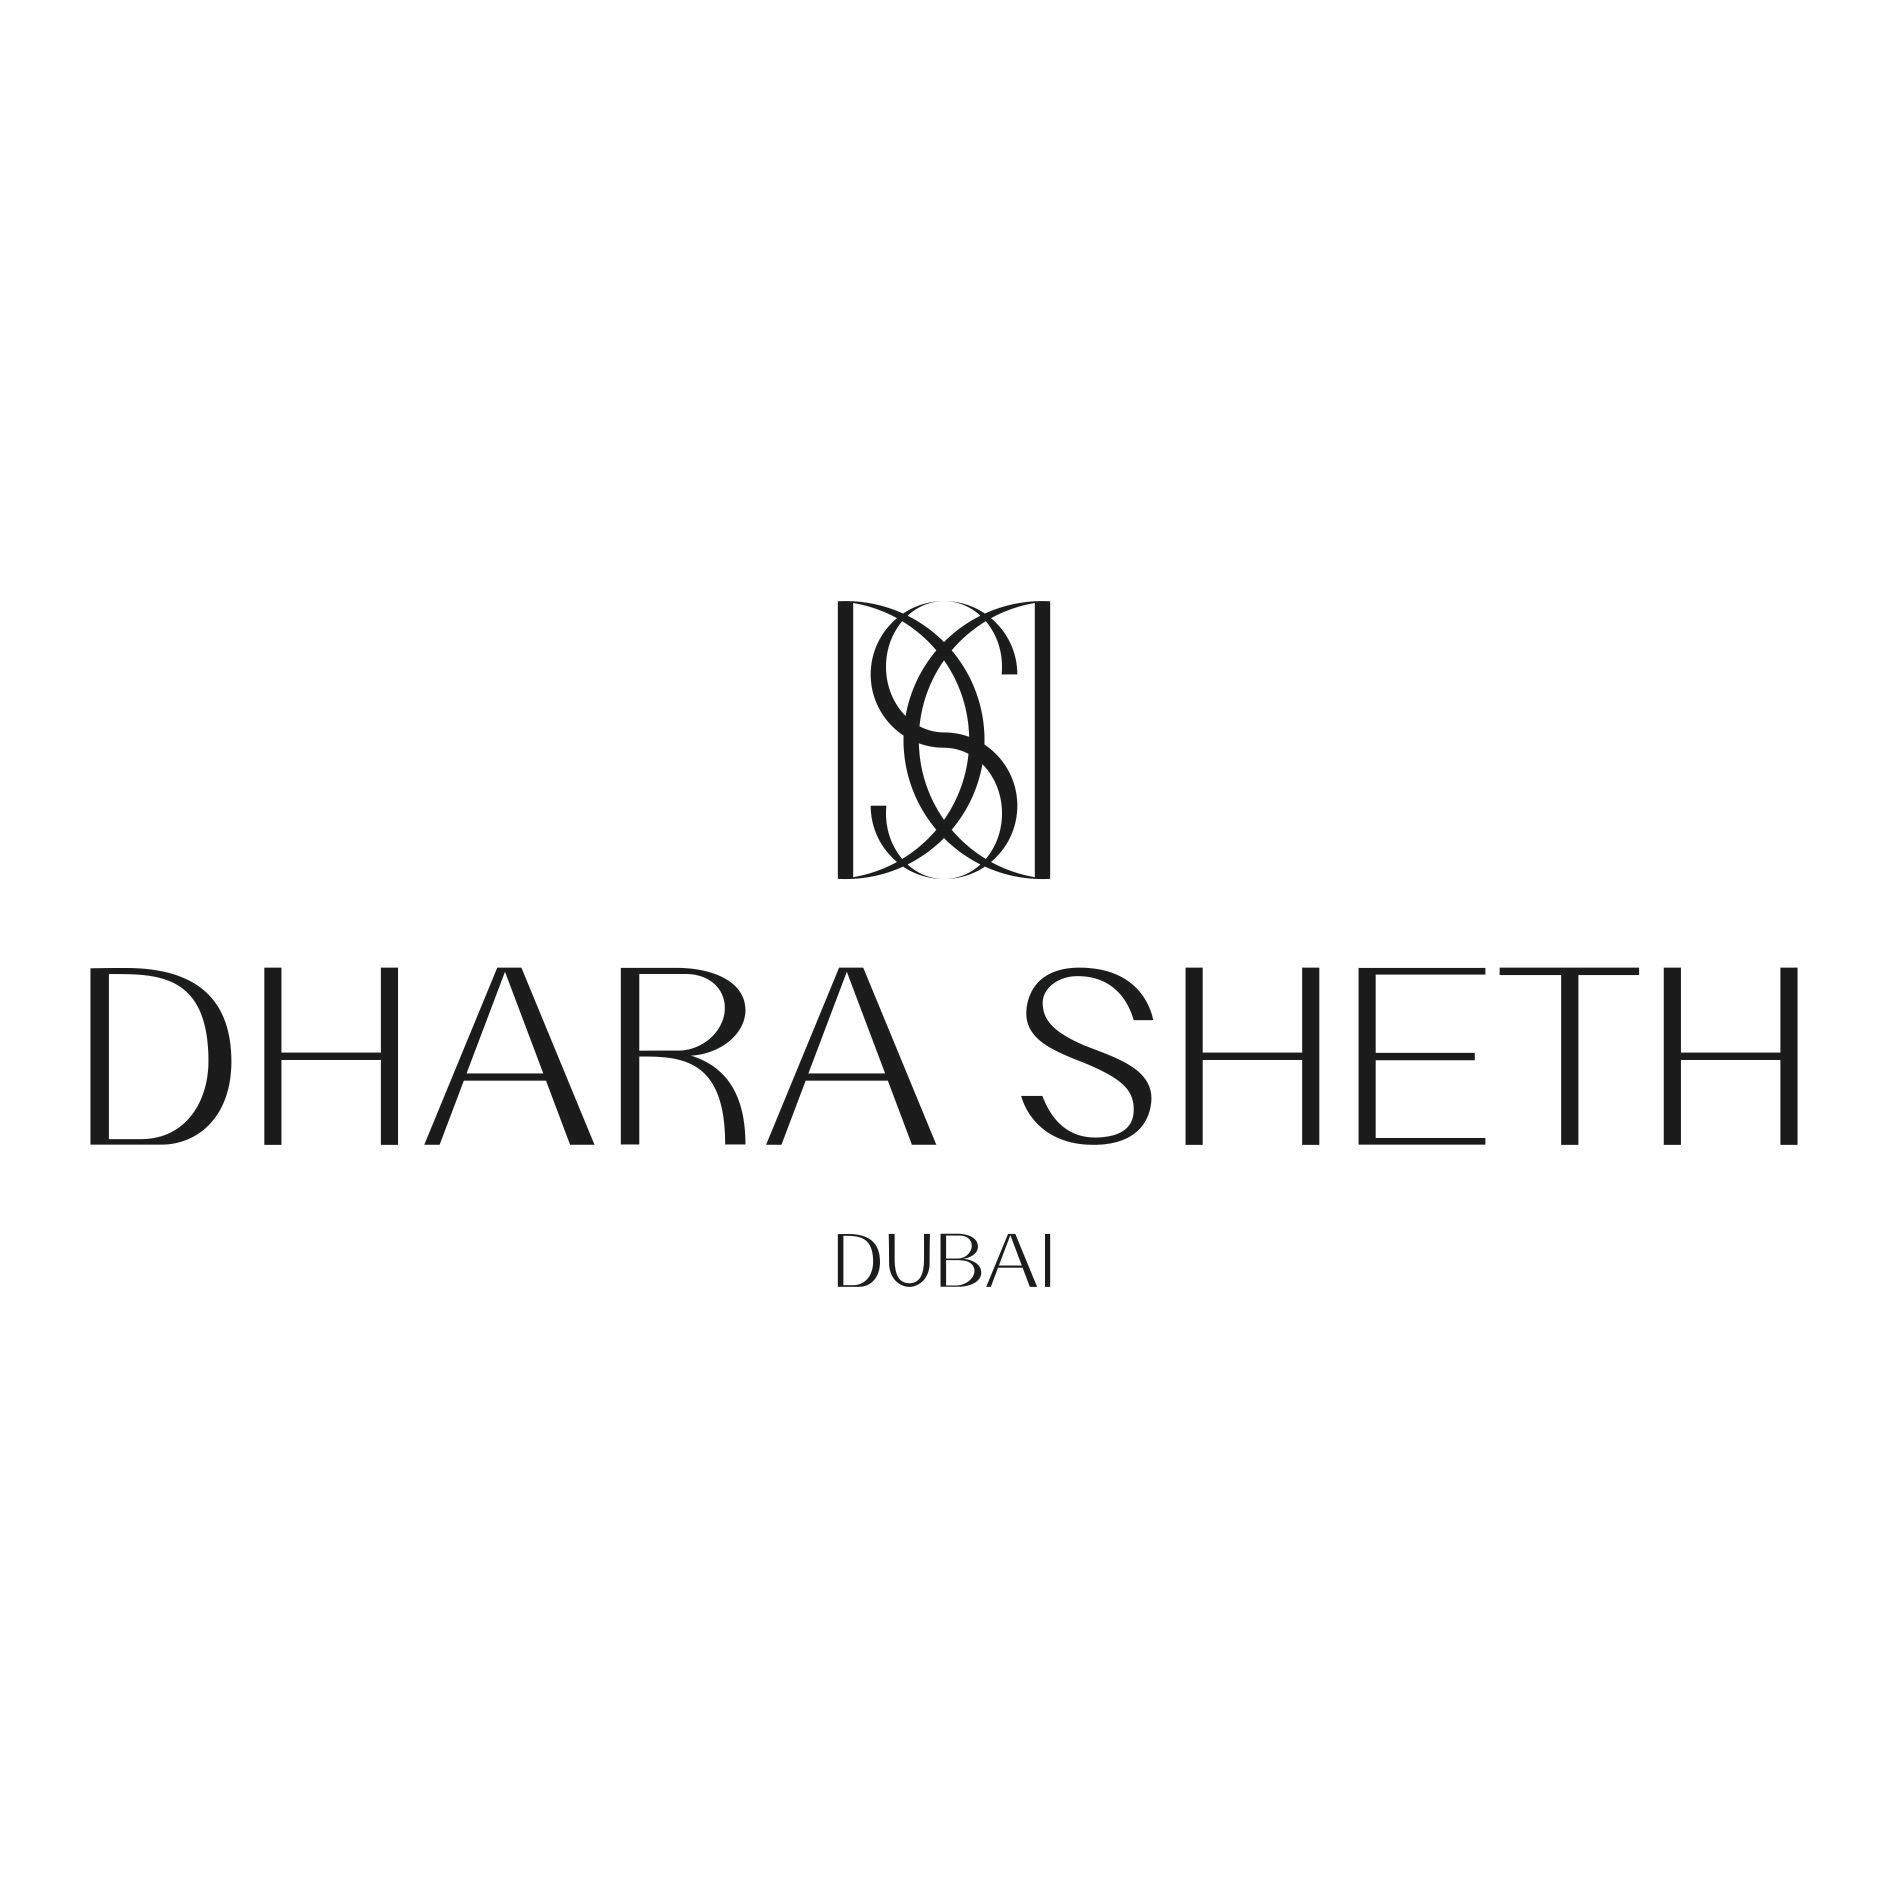 DHARA SHETH DUBAI